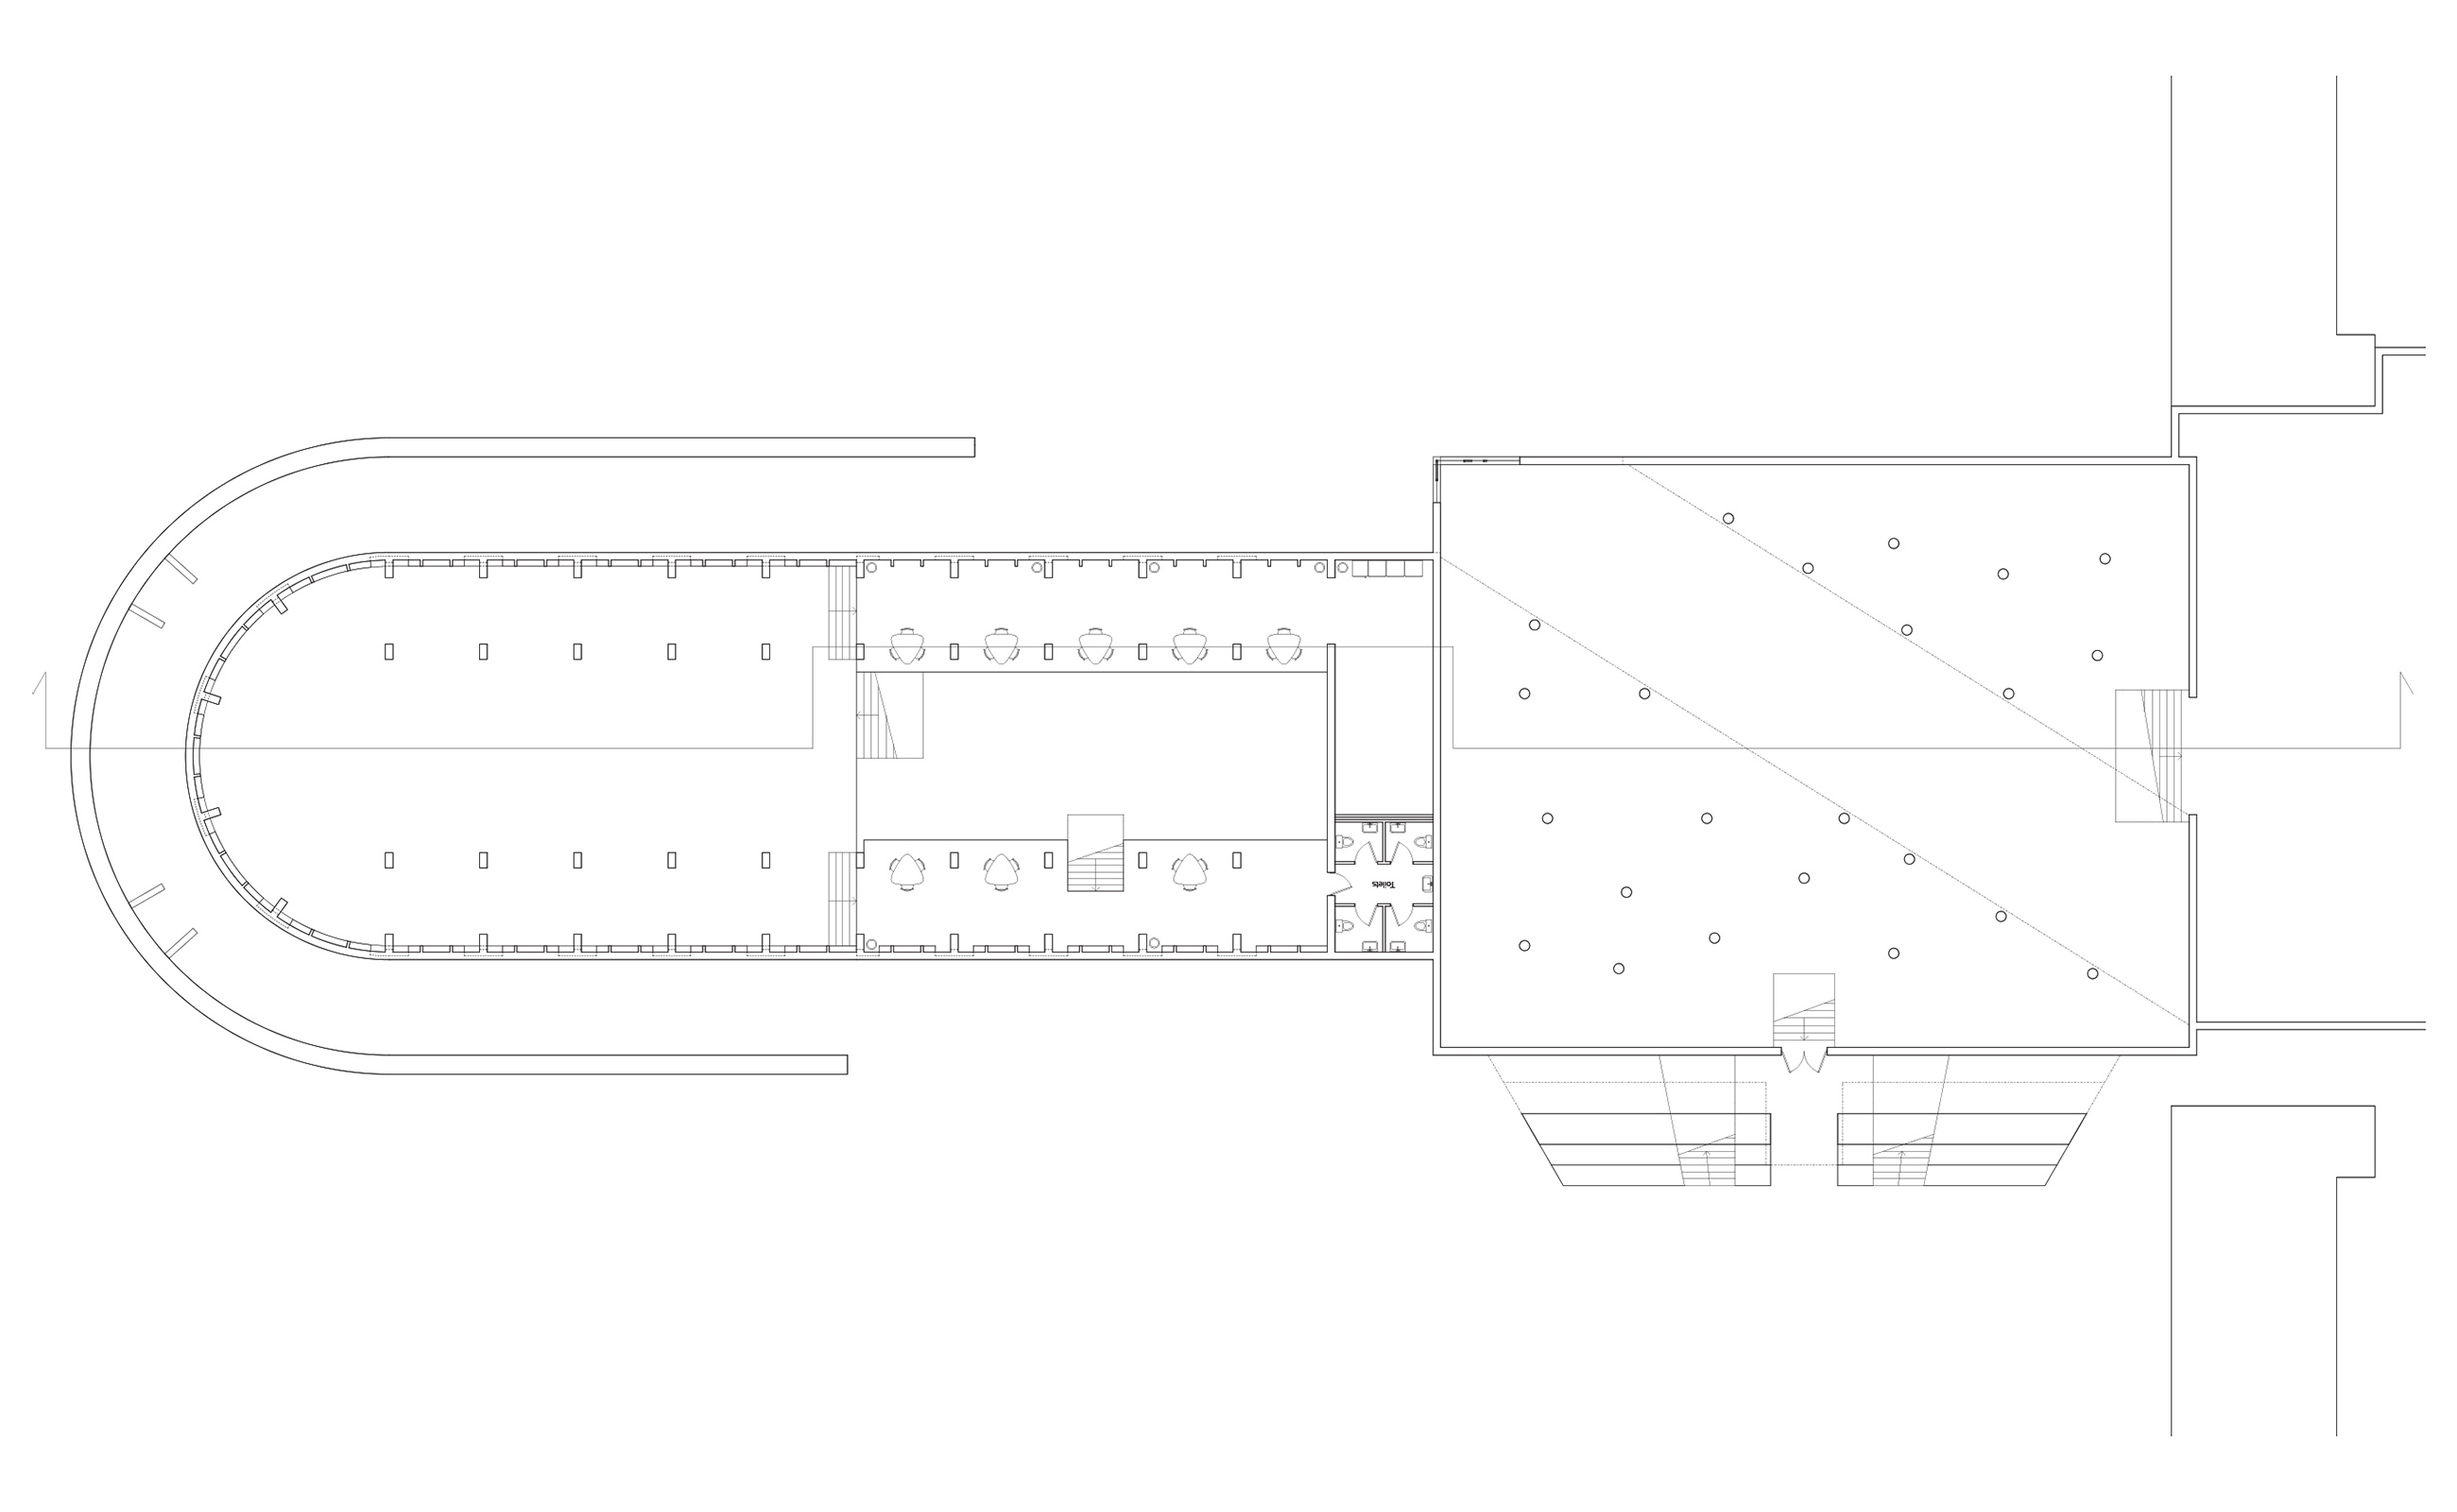 skoleprojekt skole projekt arkitekt arkitektskole aarhus ø rügen tyskland anden verdenskrig prora studerende kreativt værksted moderne dans berlins kunstakademi katedral kasino beton